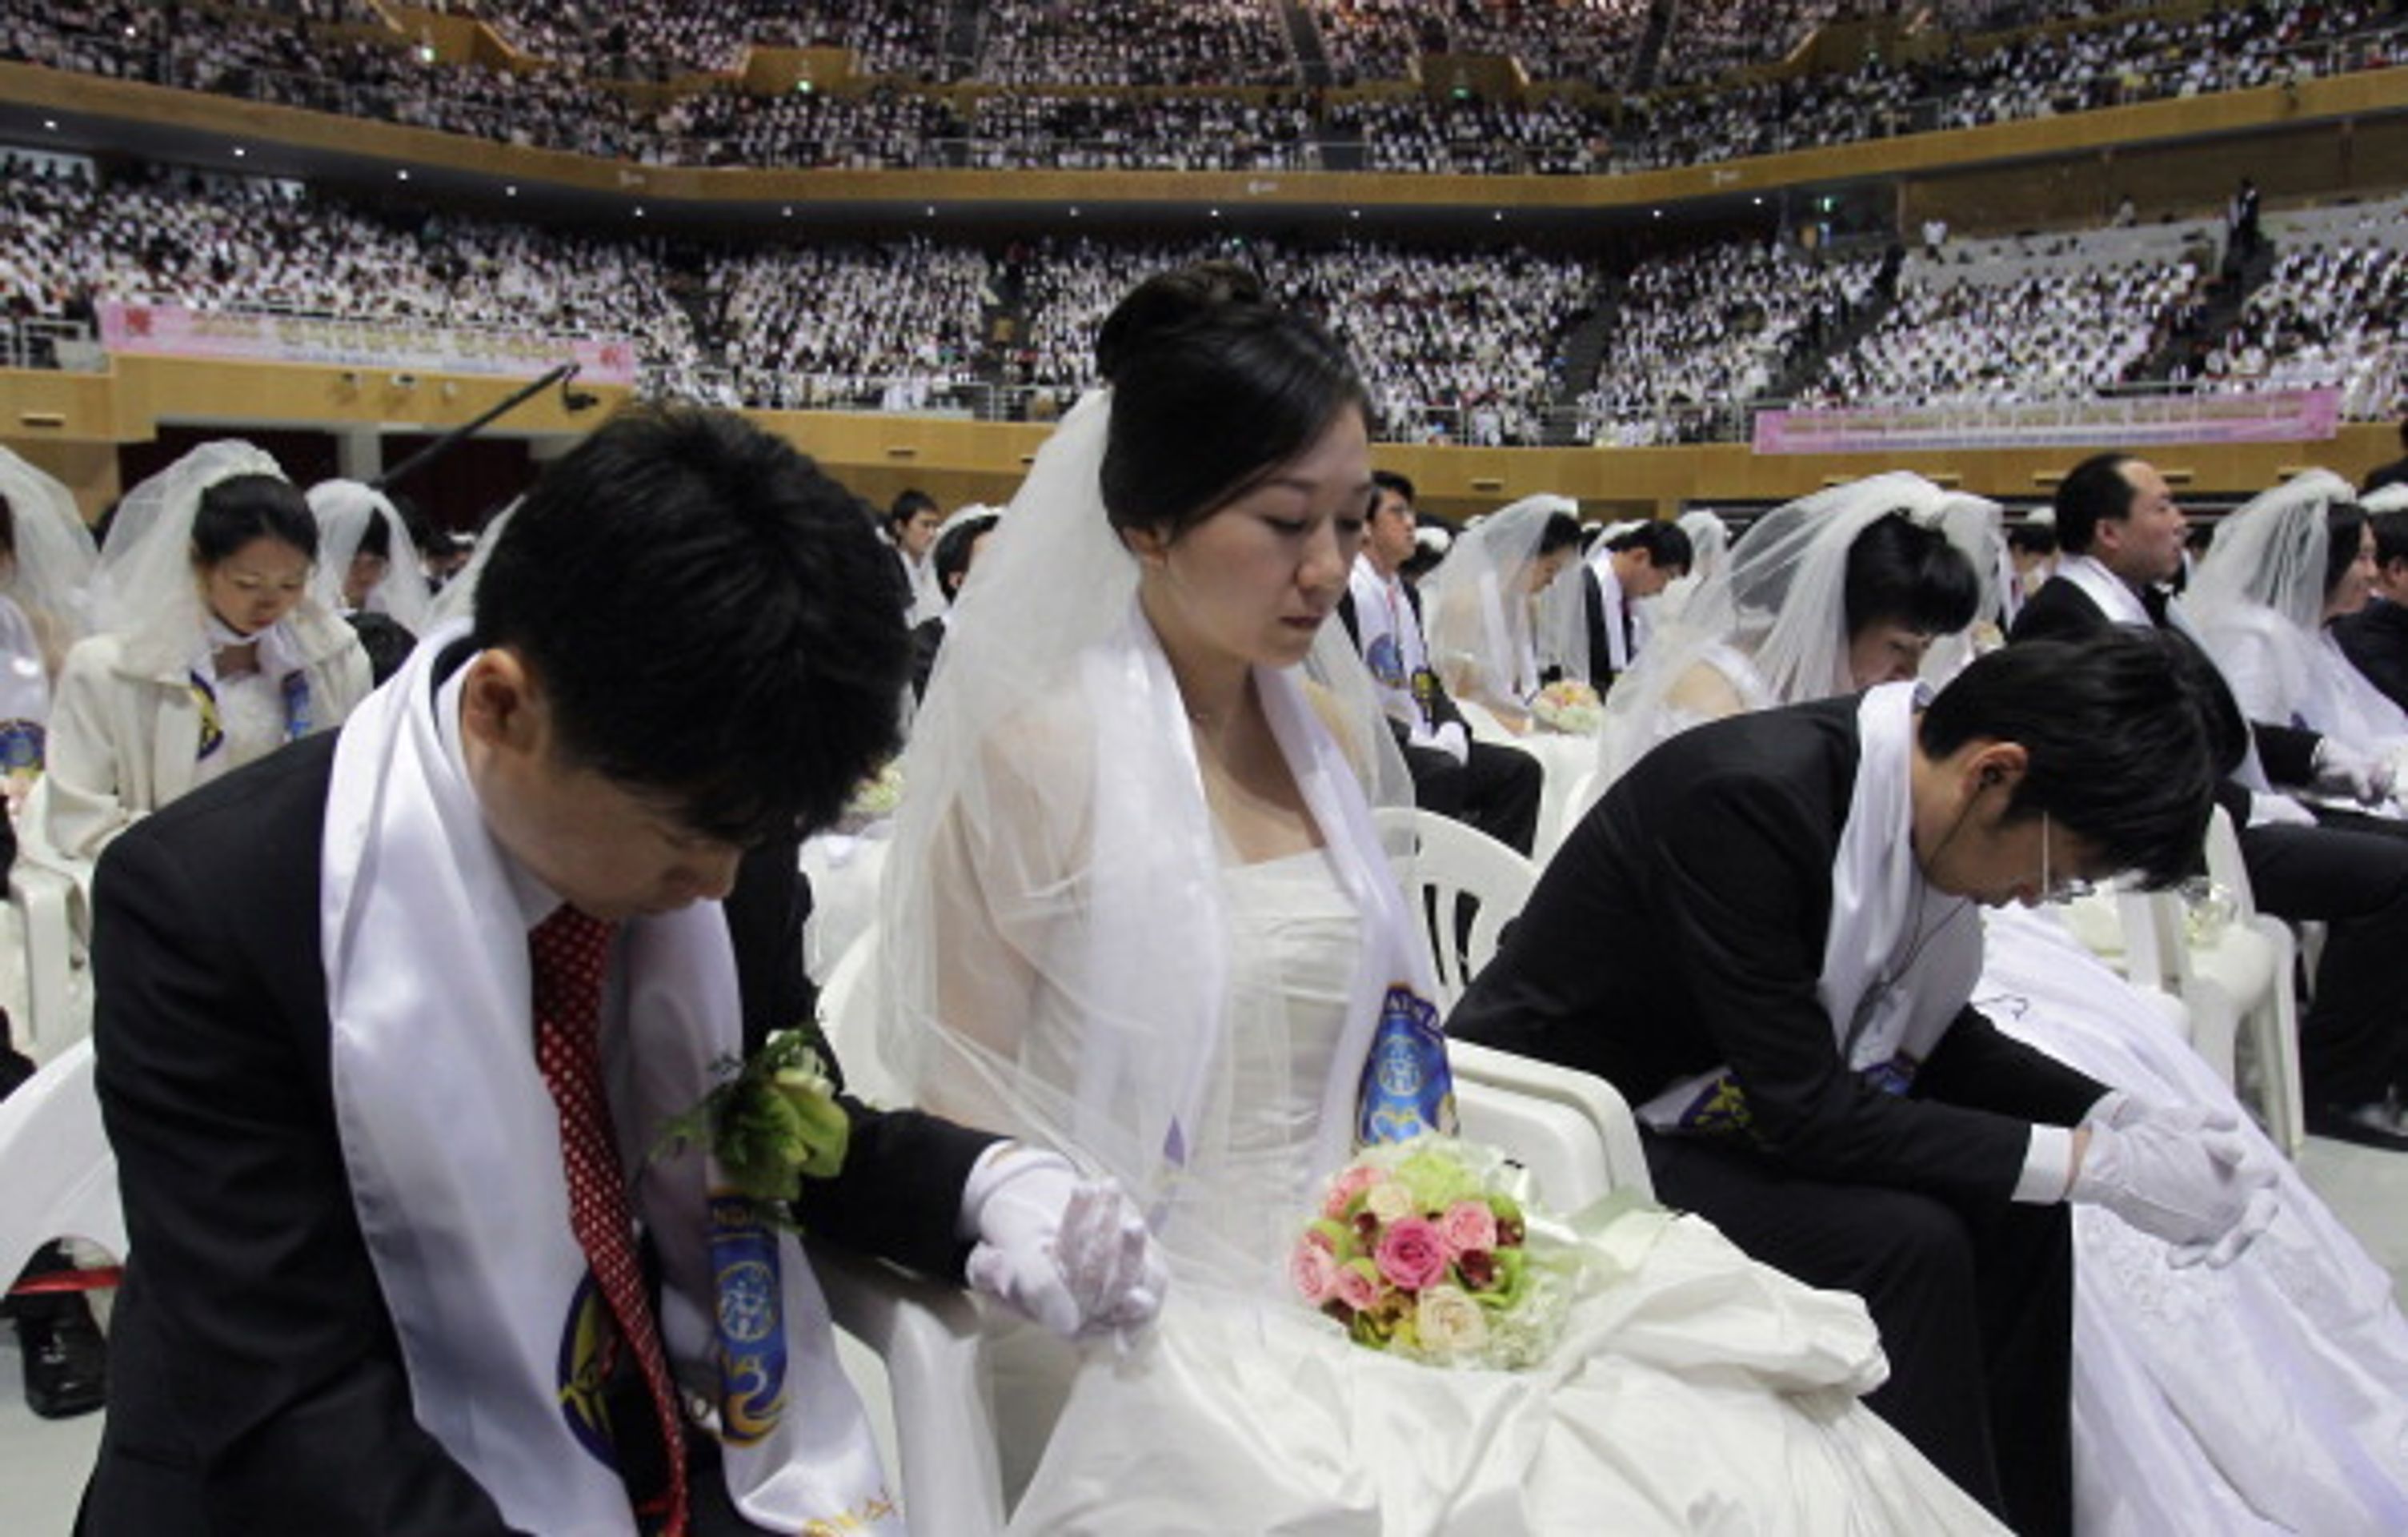 Hromadná svatba v Jižní Koreji - 8 - Svatba ve velkém stylu: Bralo se 3500 párů najednou! (5/12)